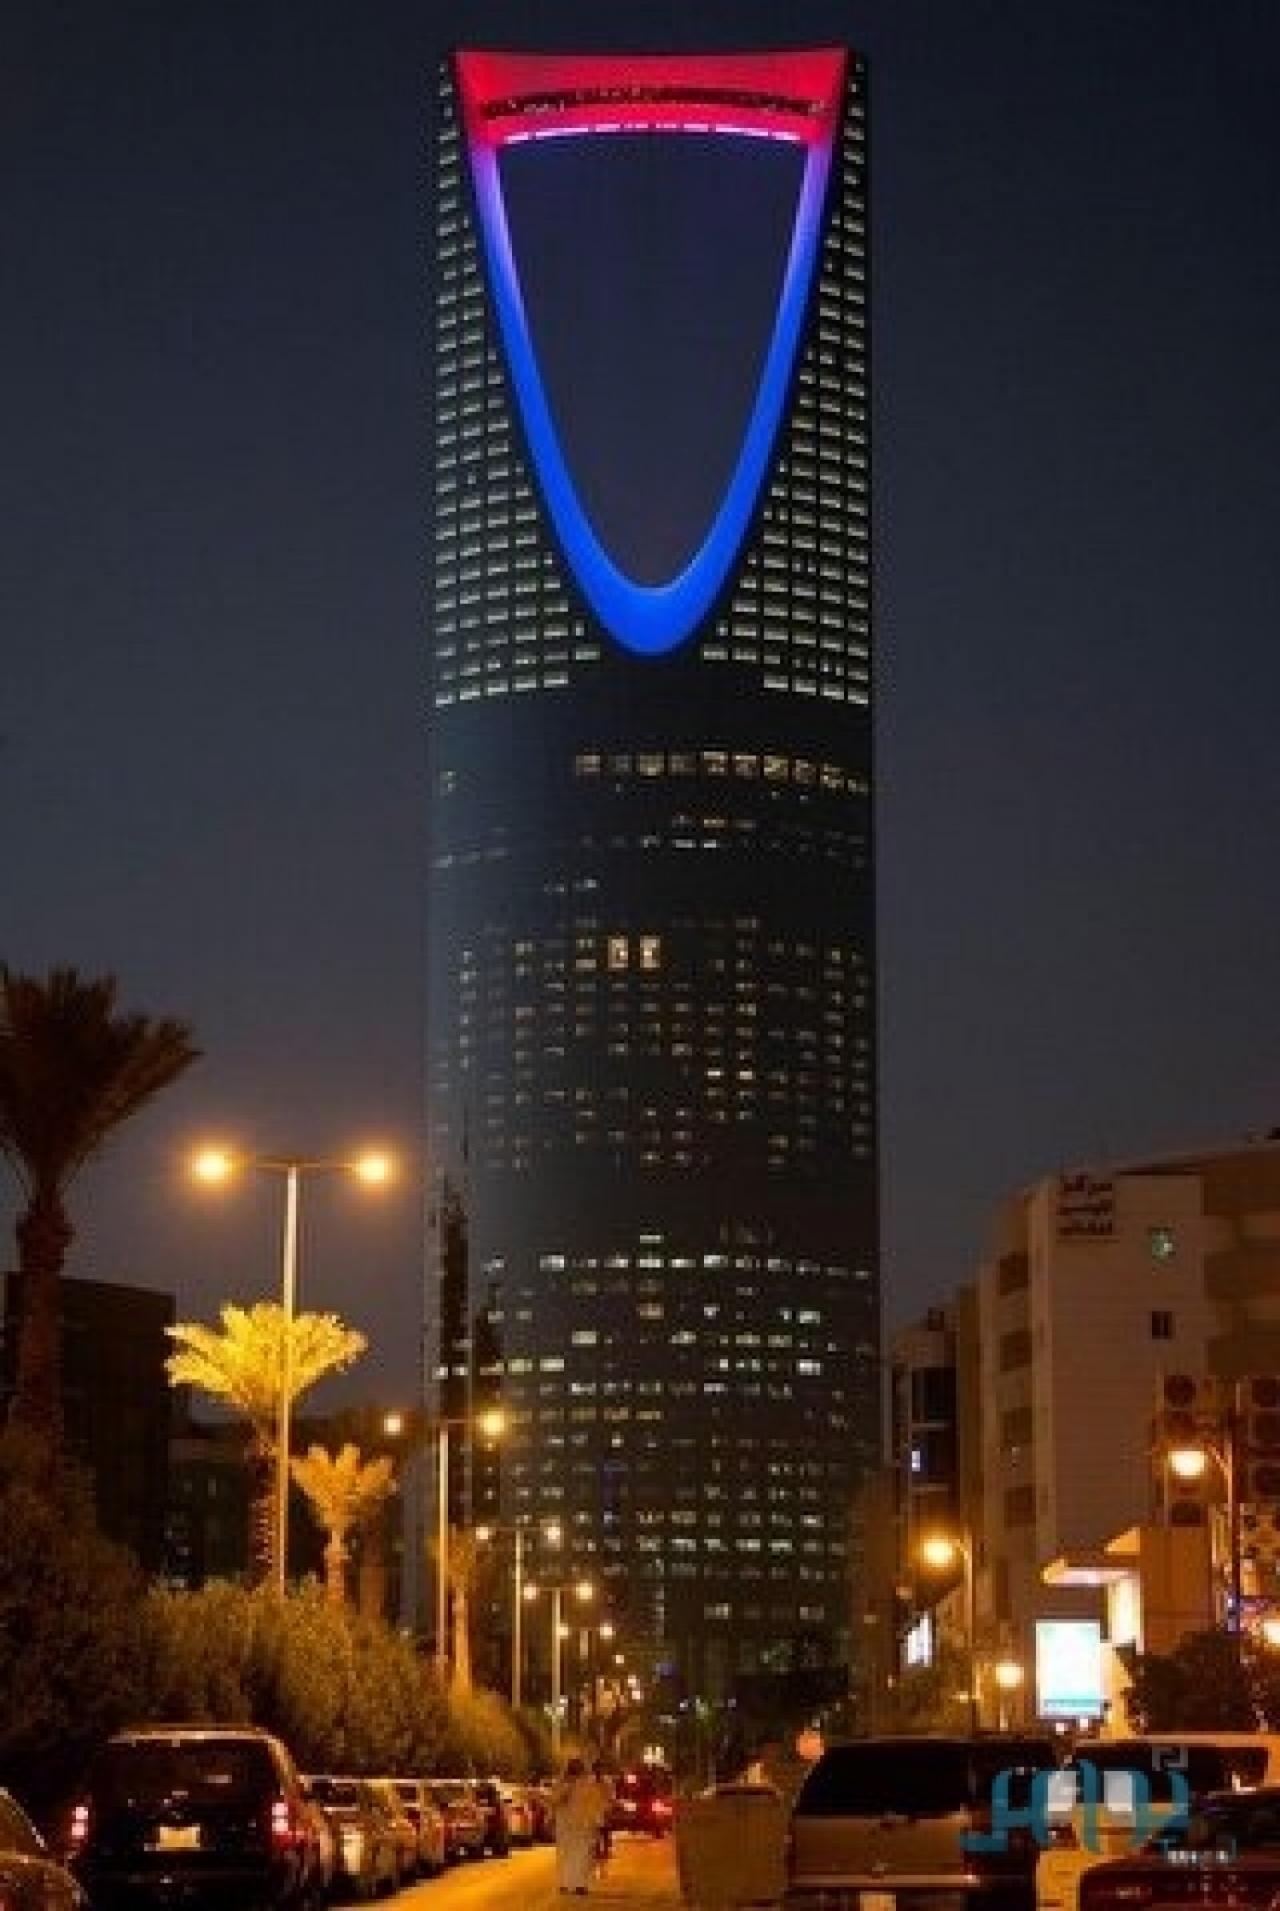 برج المملكة الرياض , تعرف على برج المملكة الرياض روشه